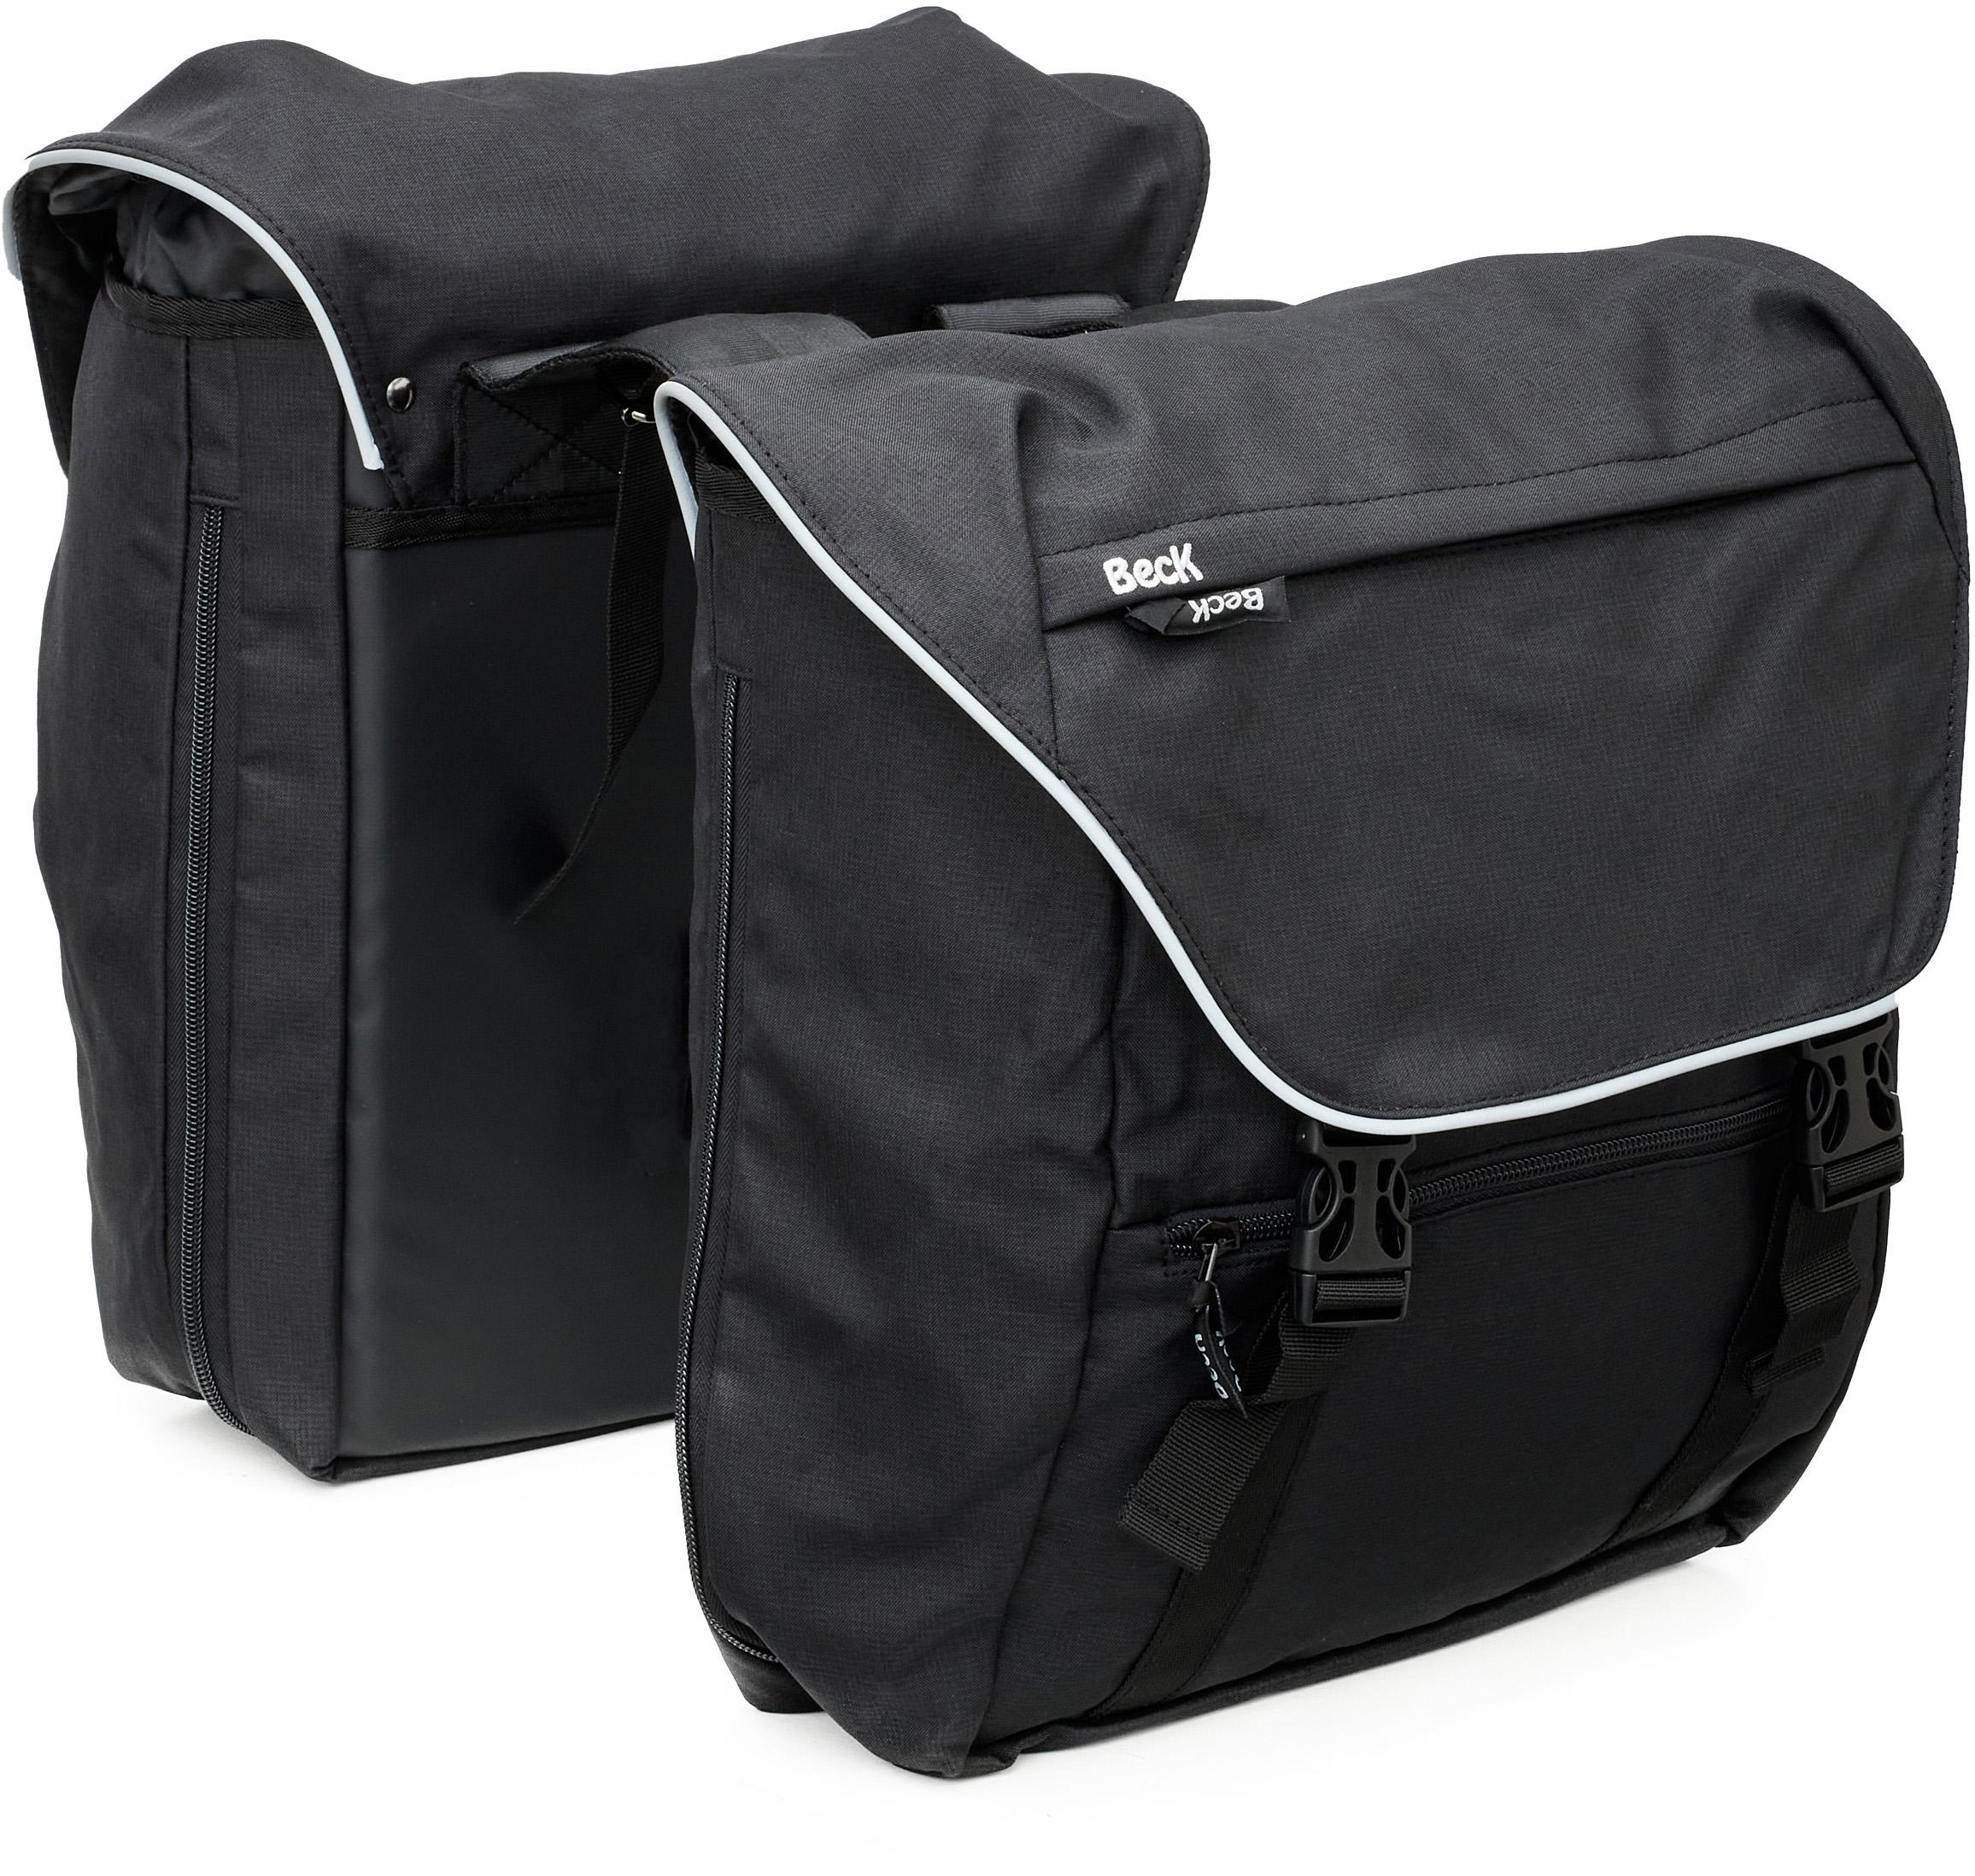 Beck Sporty Double Pannier Bag Black